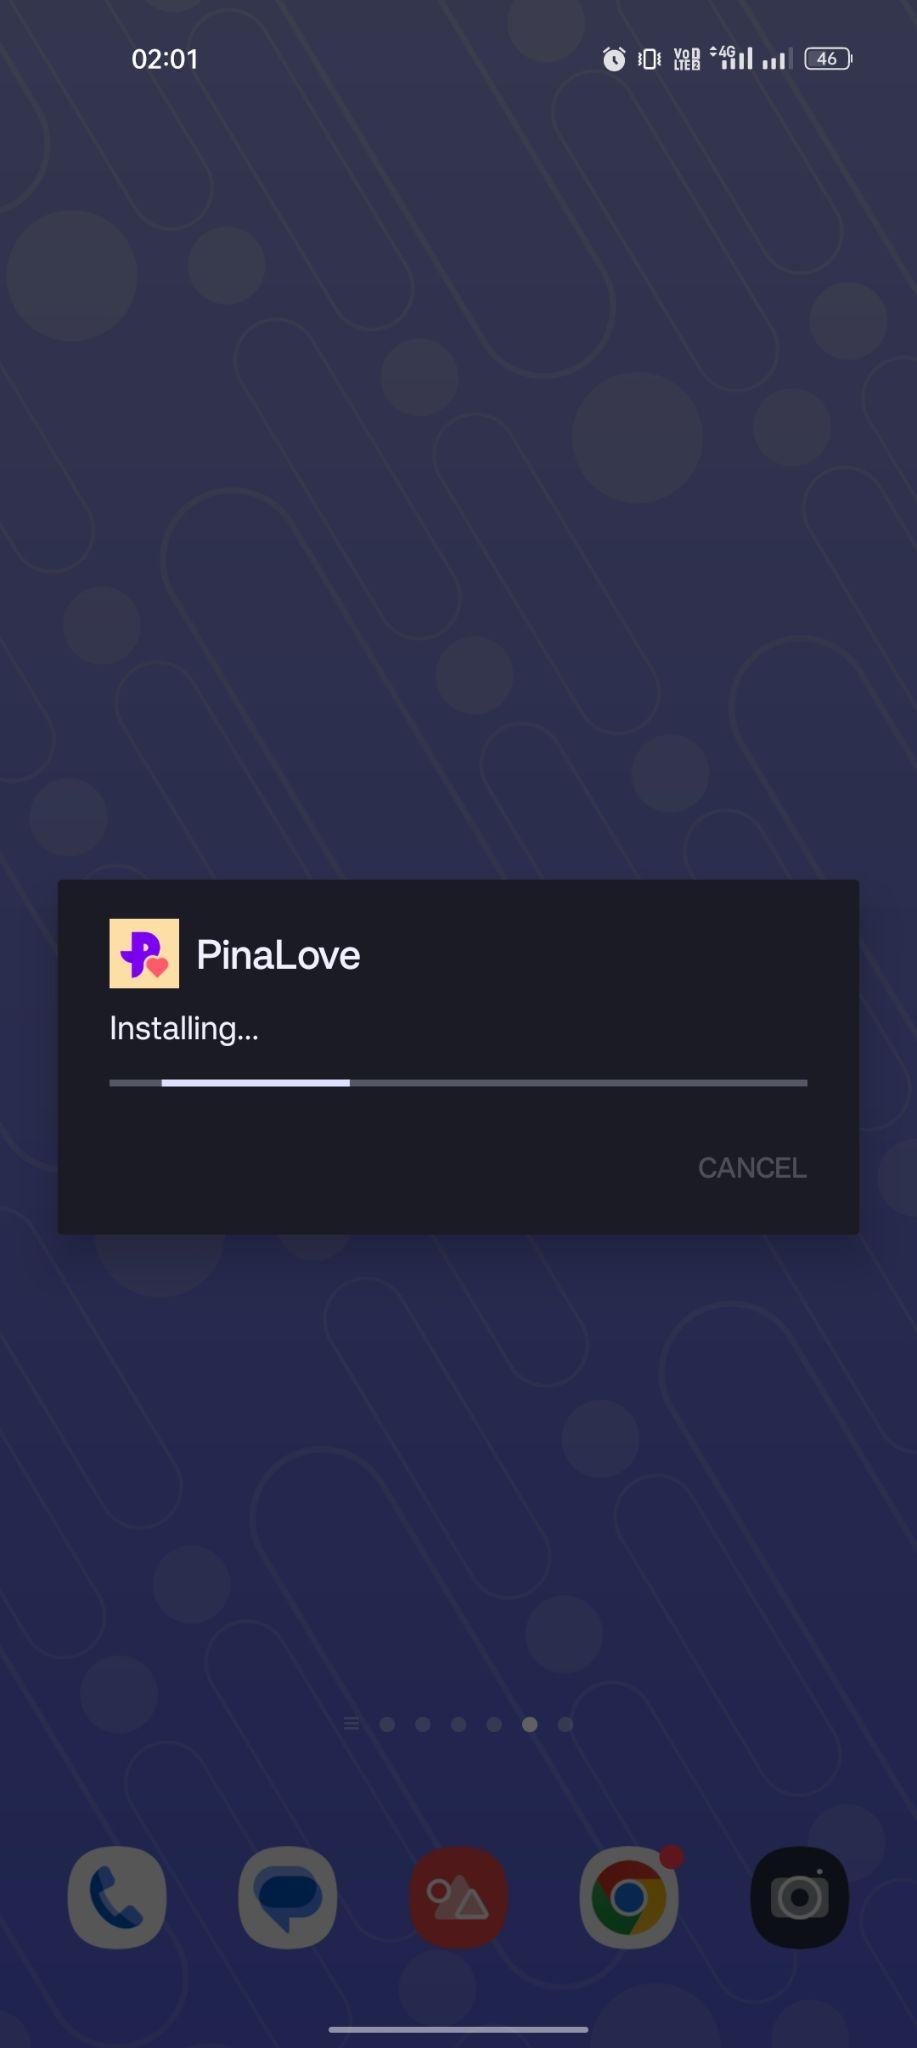 PinaLove apk installing